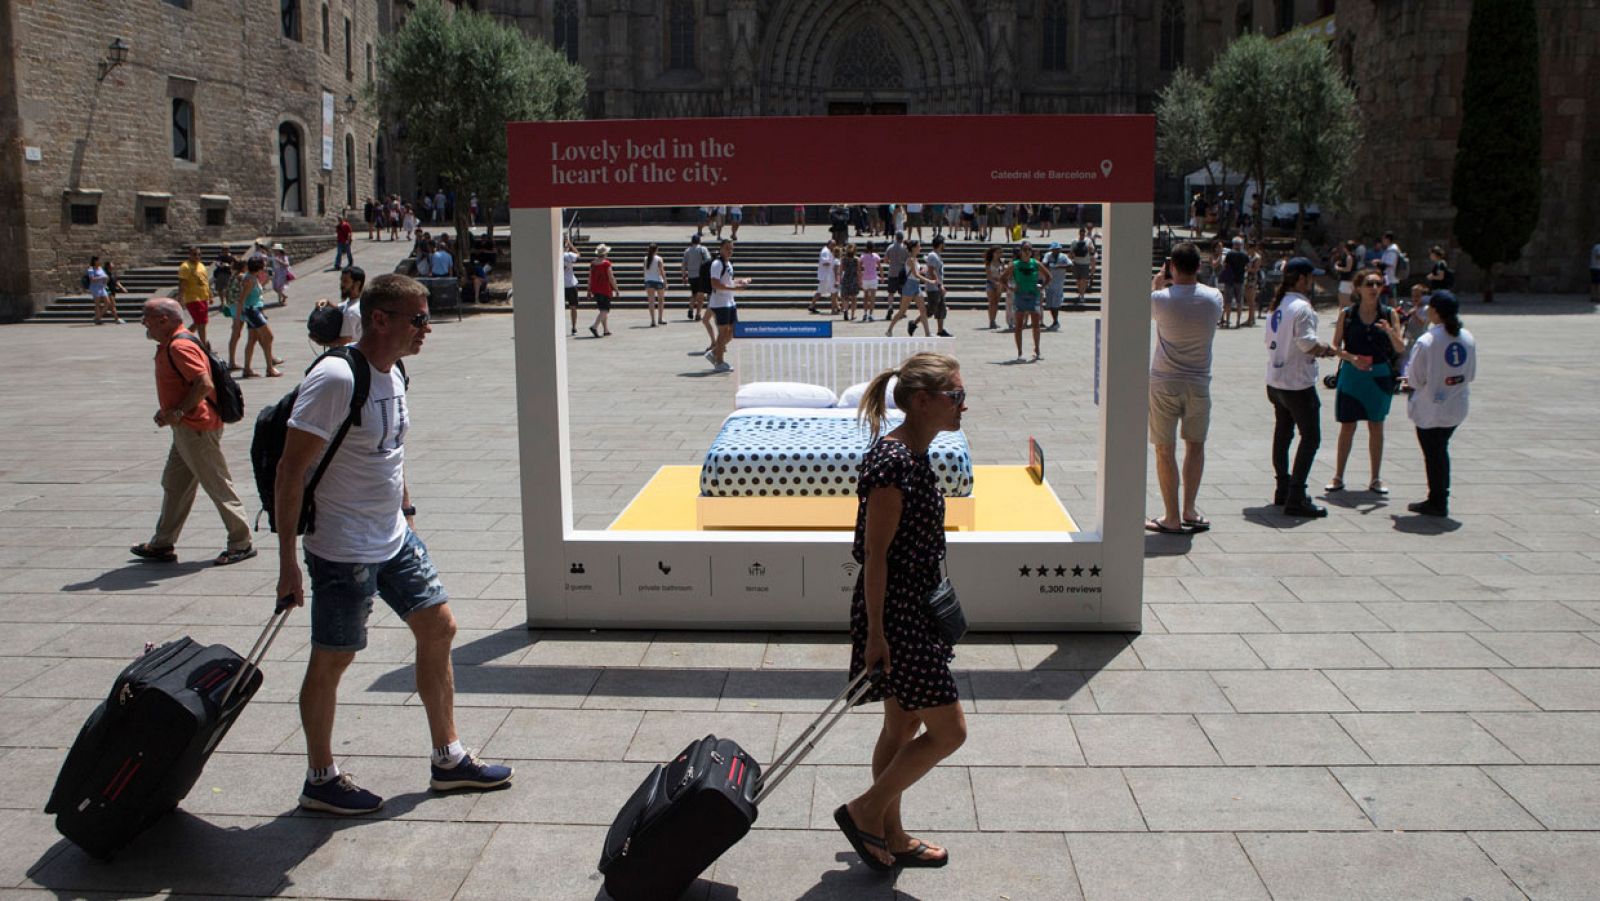 Campaña del Ayuntamiento de Barcelona para concienciar a los turistas sobre los alquileres ilegales